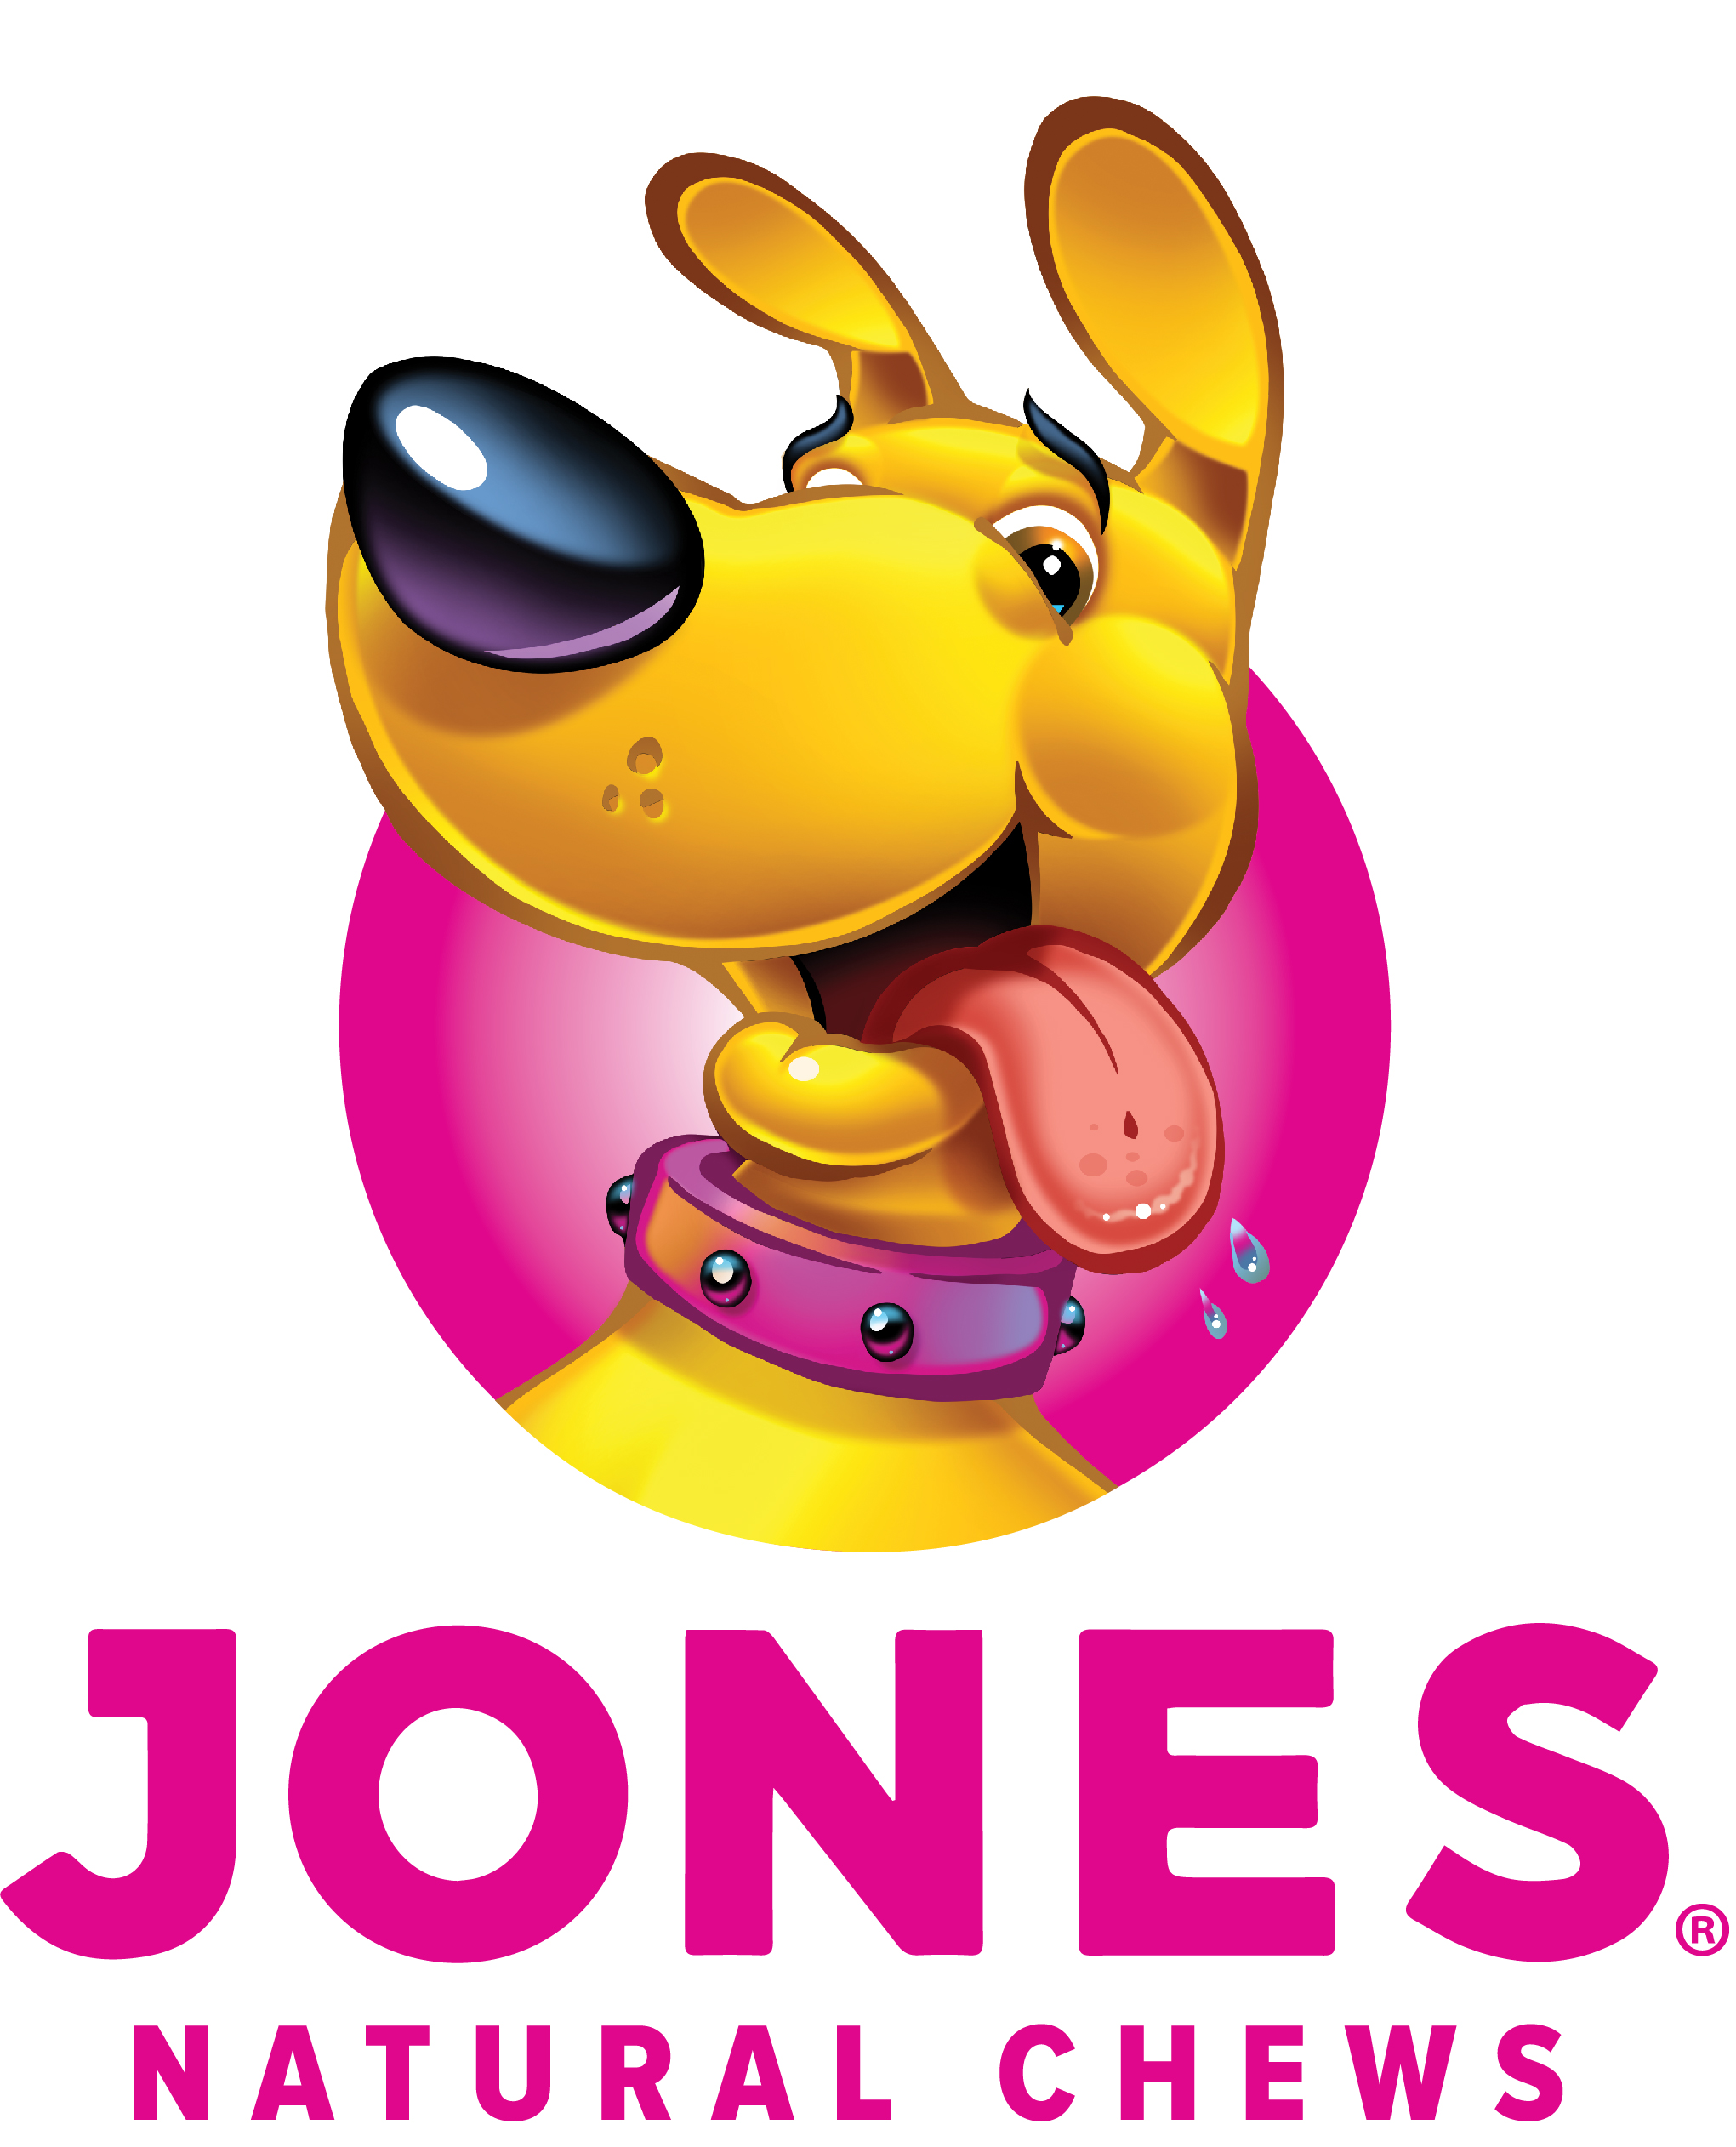 Jones Naturals - Jones Natural Chews - Pet Insight